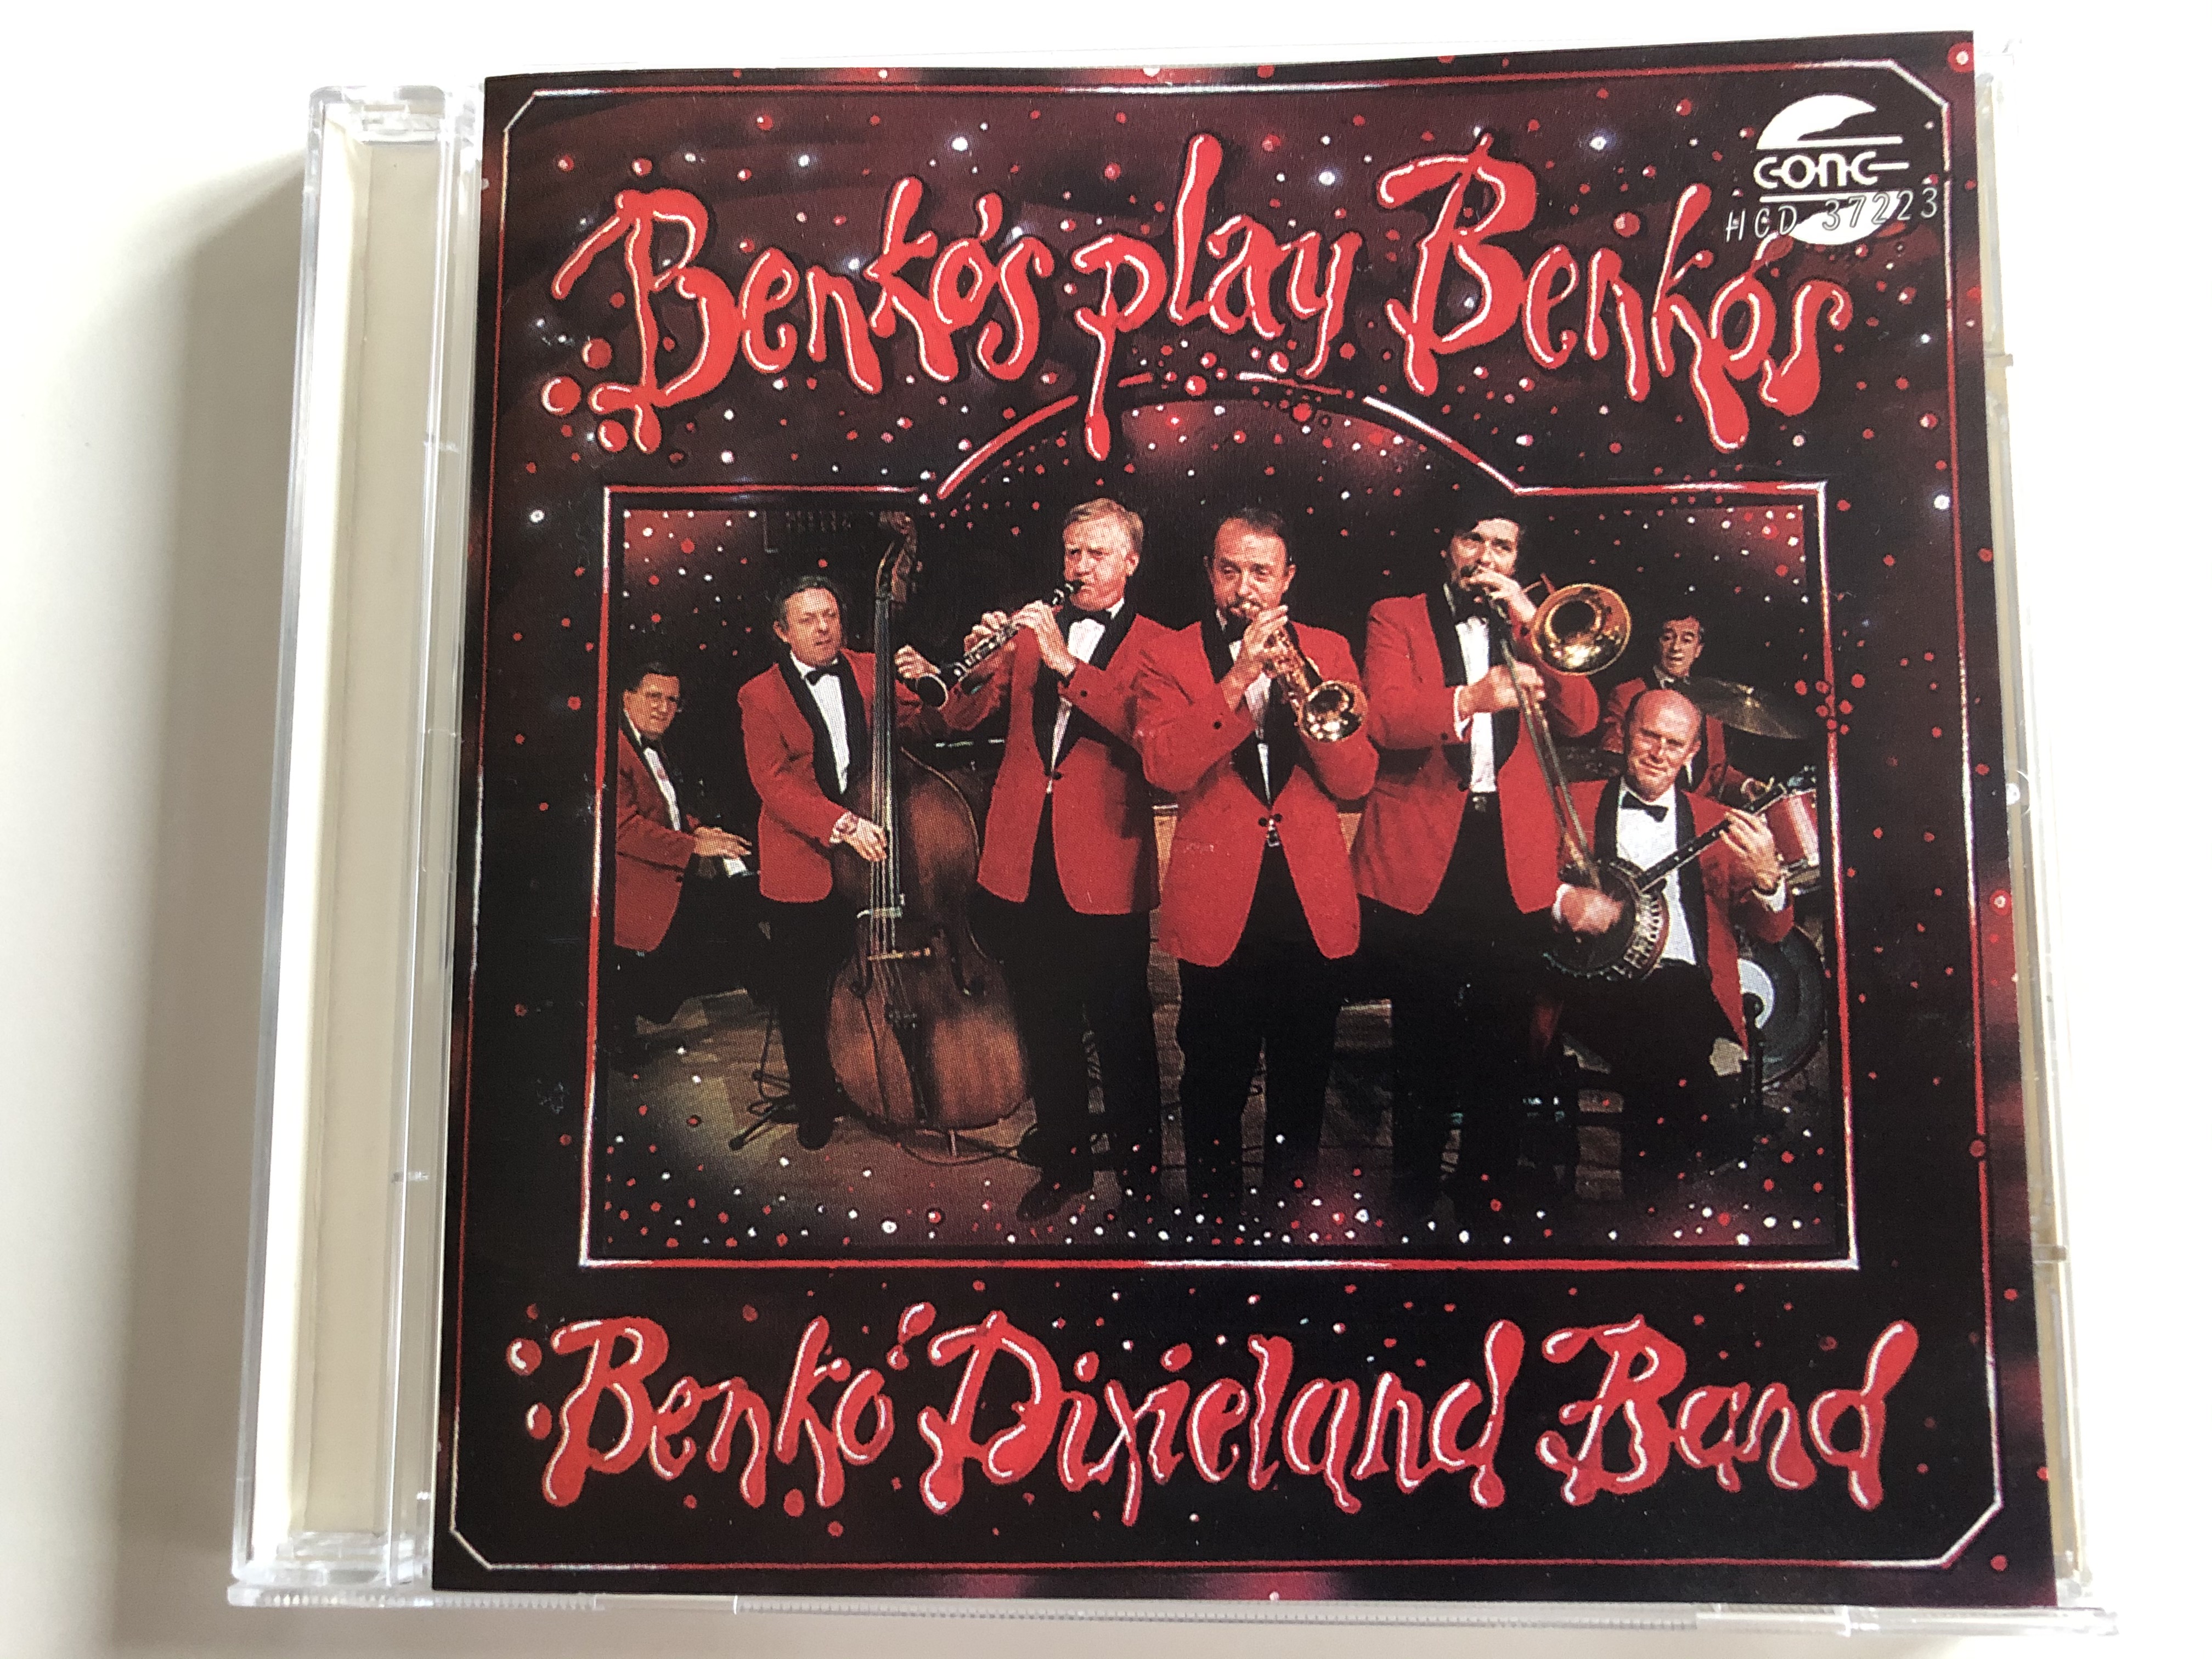 benk-s-play-benk-s-benk-dixieland-band-hungaroton-gong-kft-audio-cd-1994-hcd-37223-1-.jpg